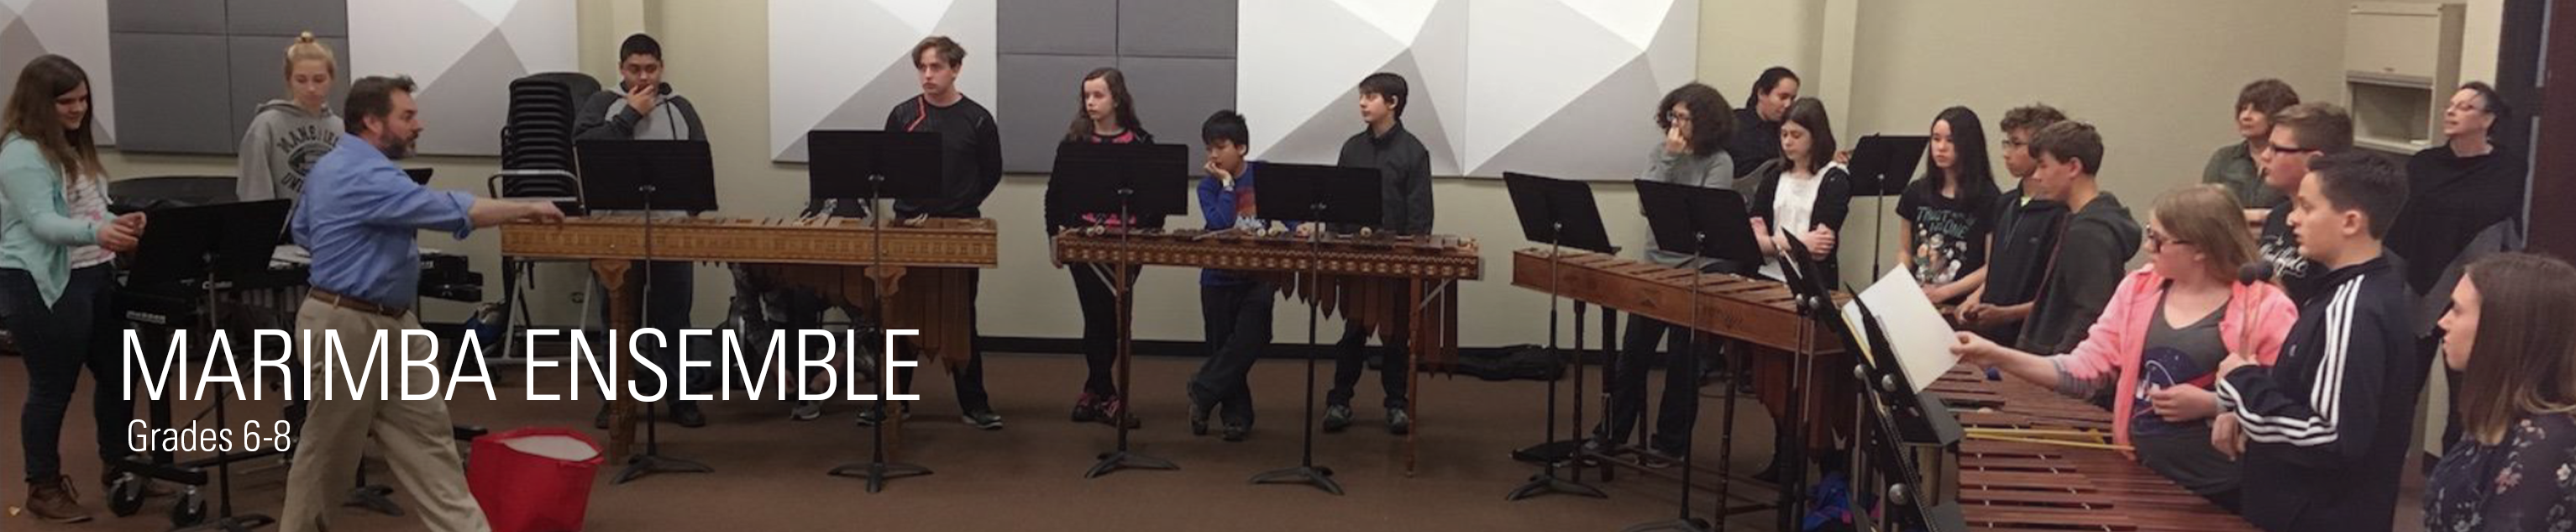 marimba ensemble for grades 6-8 banner image